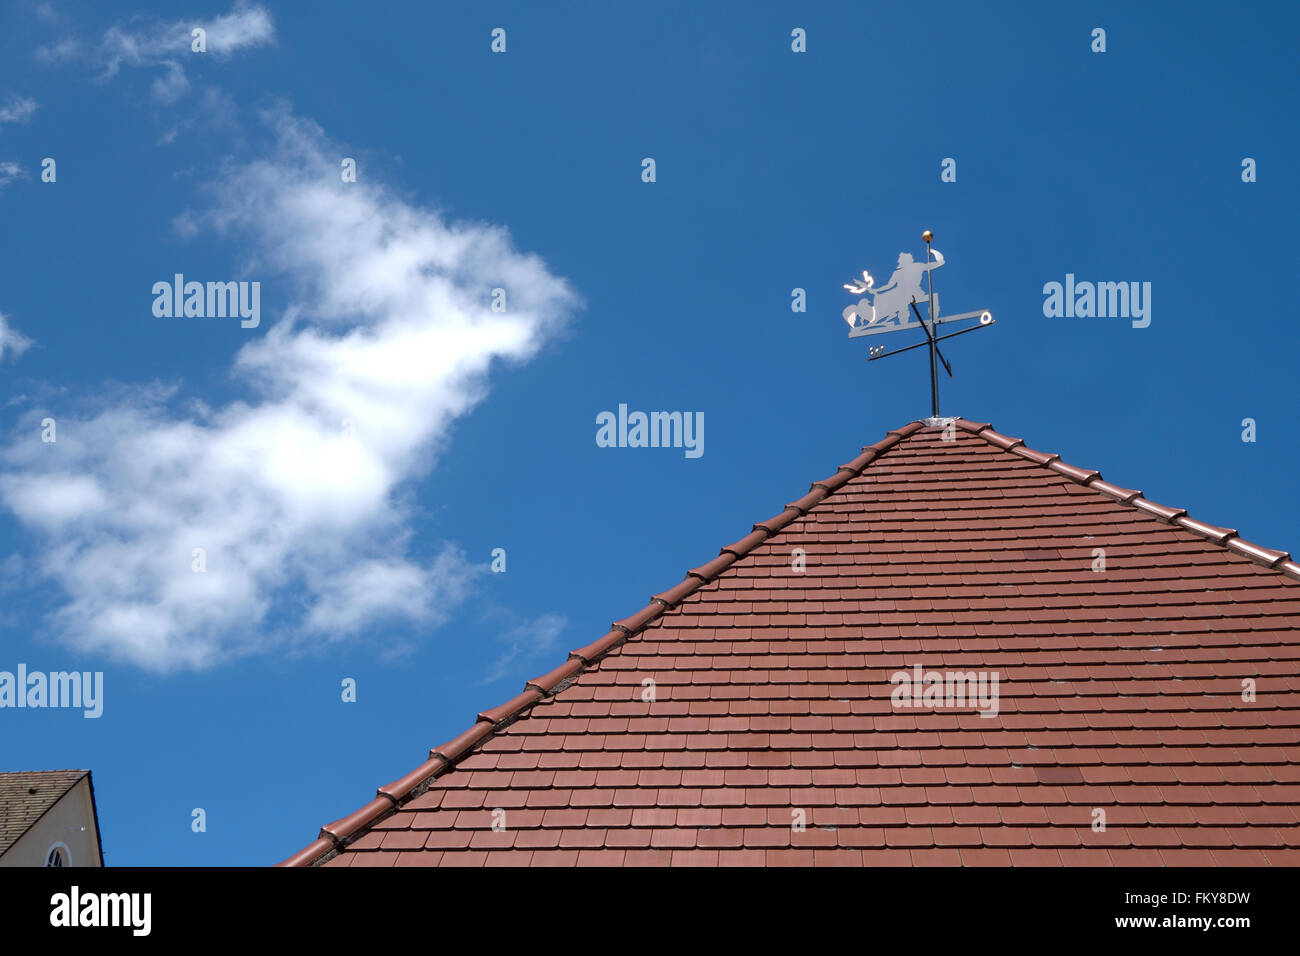 Banderuola con il diavolo e indicatore di direzioni di bussola su un tetto a punta con tegole rosse contro un cielo blu. Foto Stock